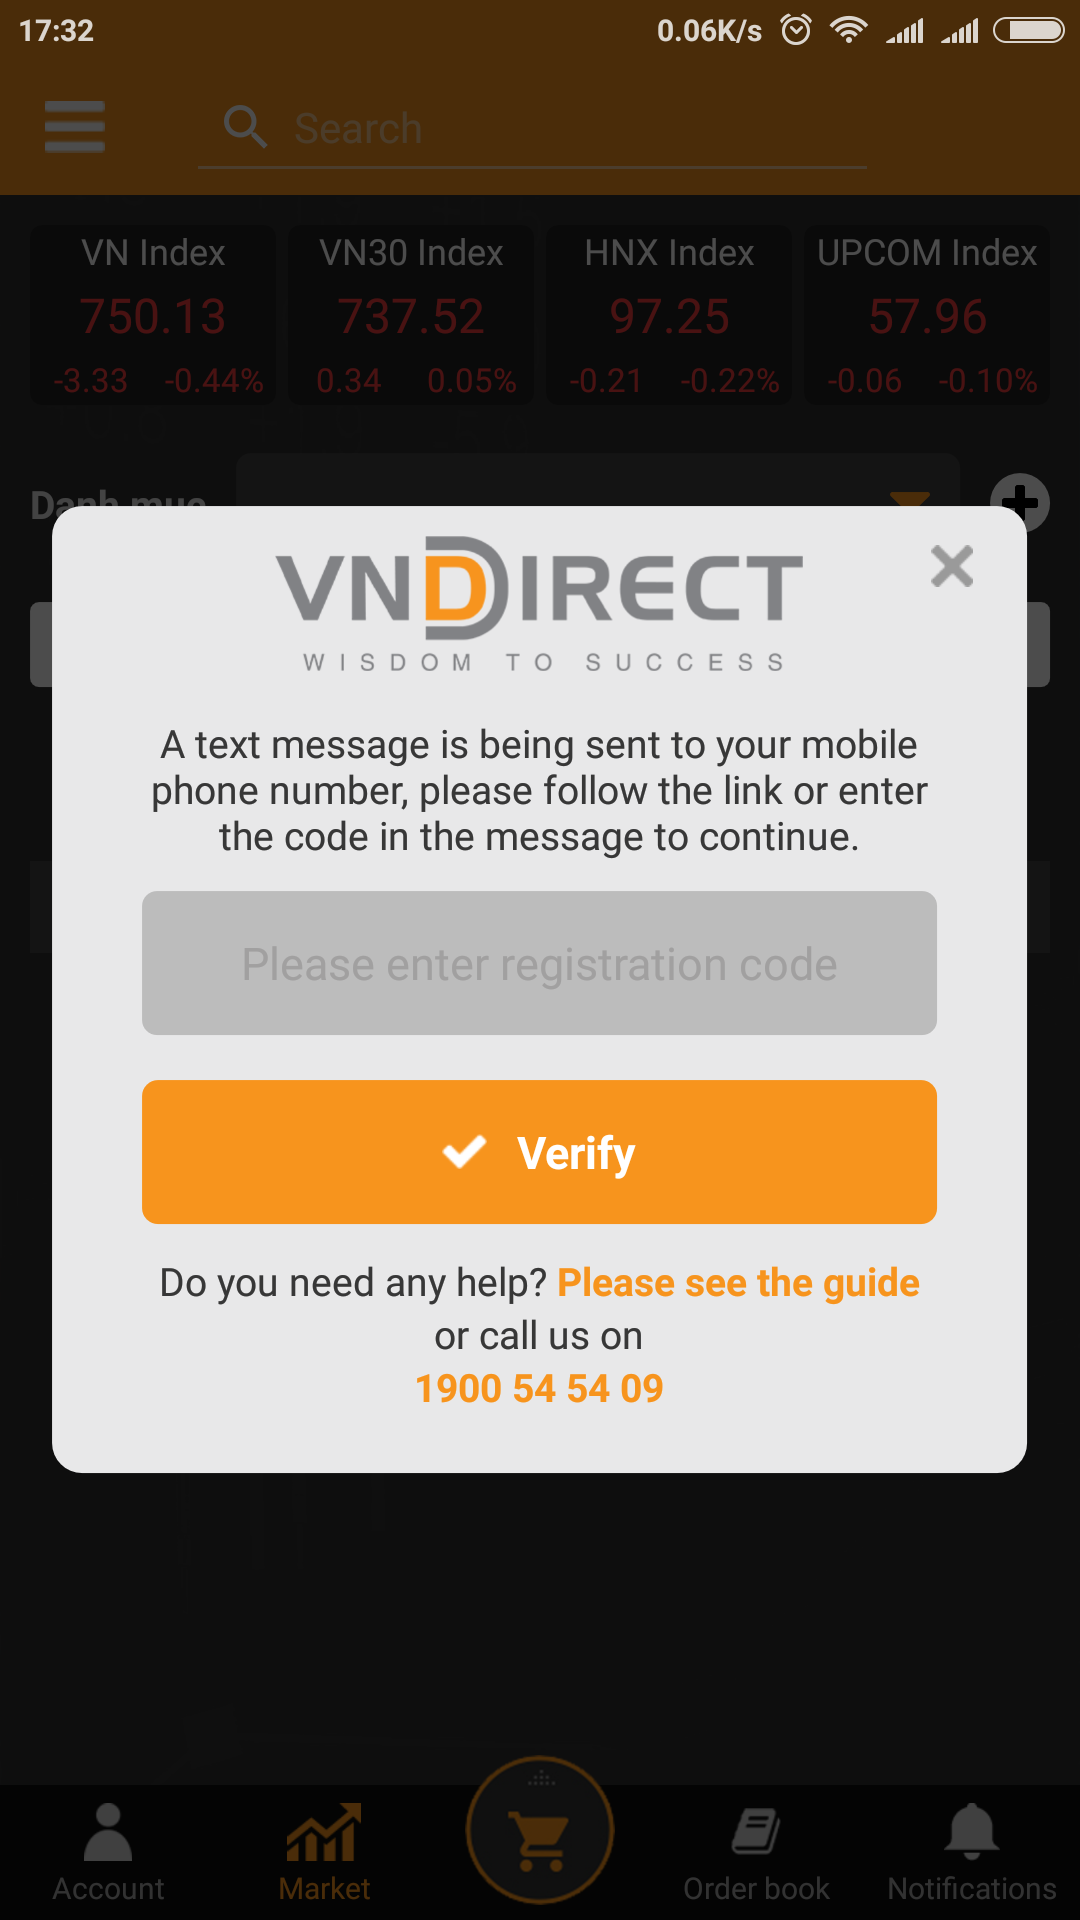 Verify Access Code